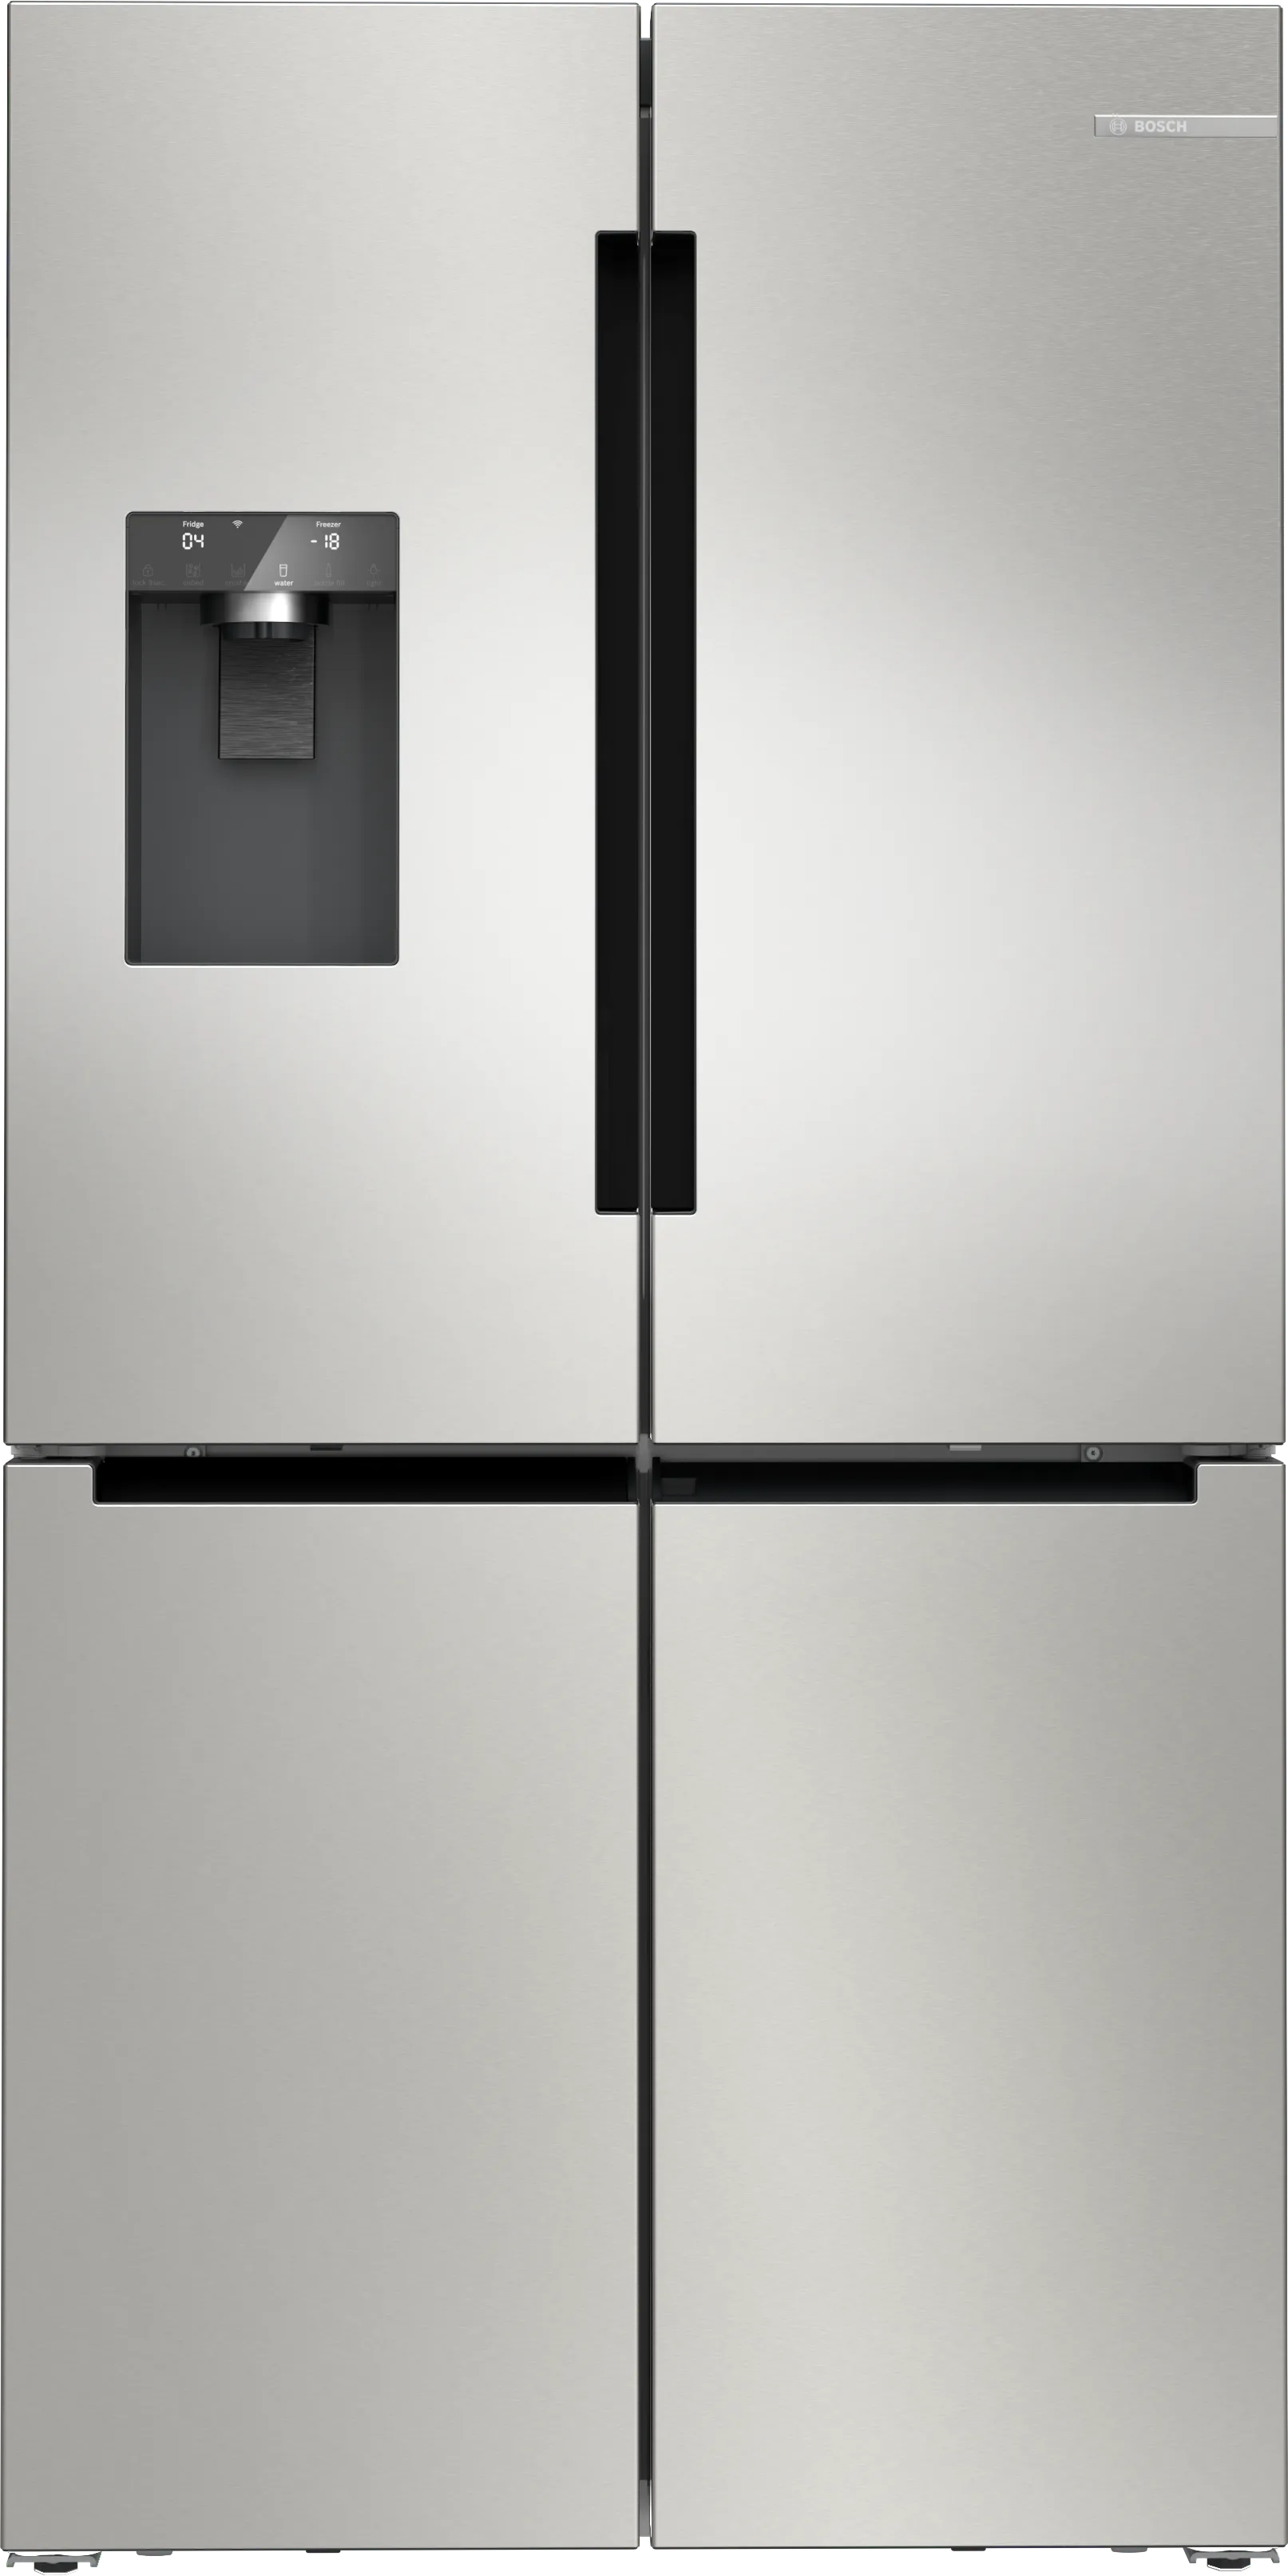 Serie 6 French Door chladnička s mrazničkou dole 183 x 90.5 cm matná ocel s úpravou proti otiskům prstů 